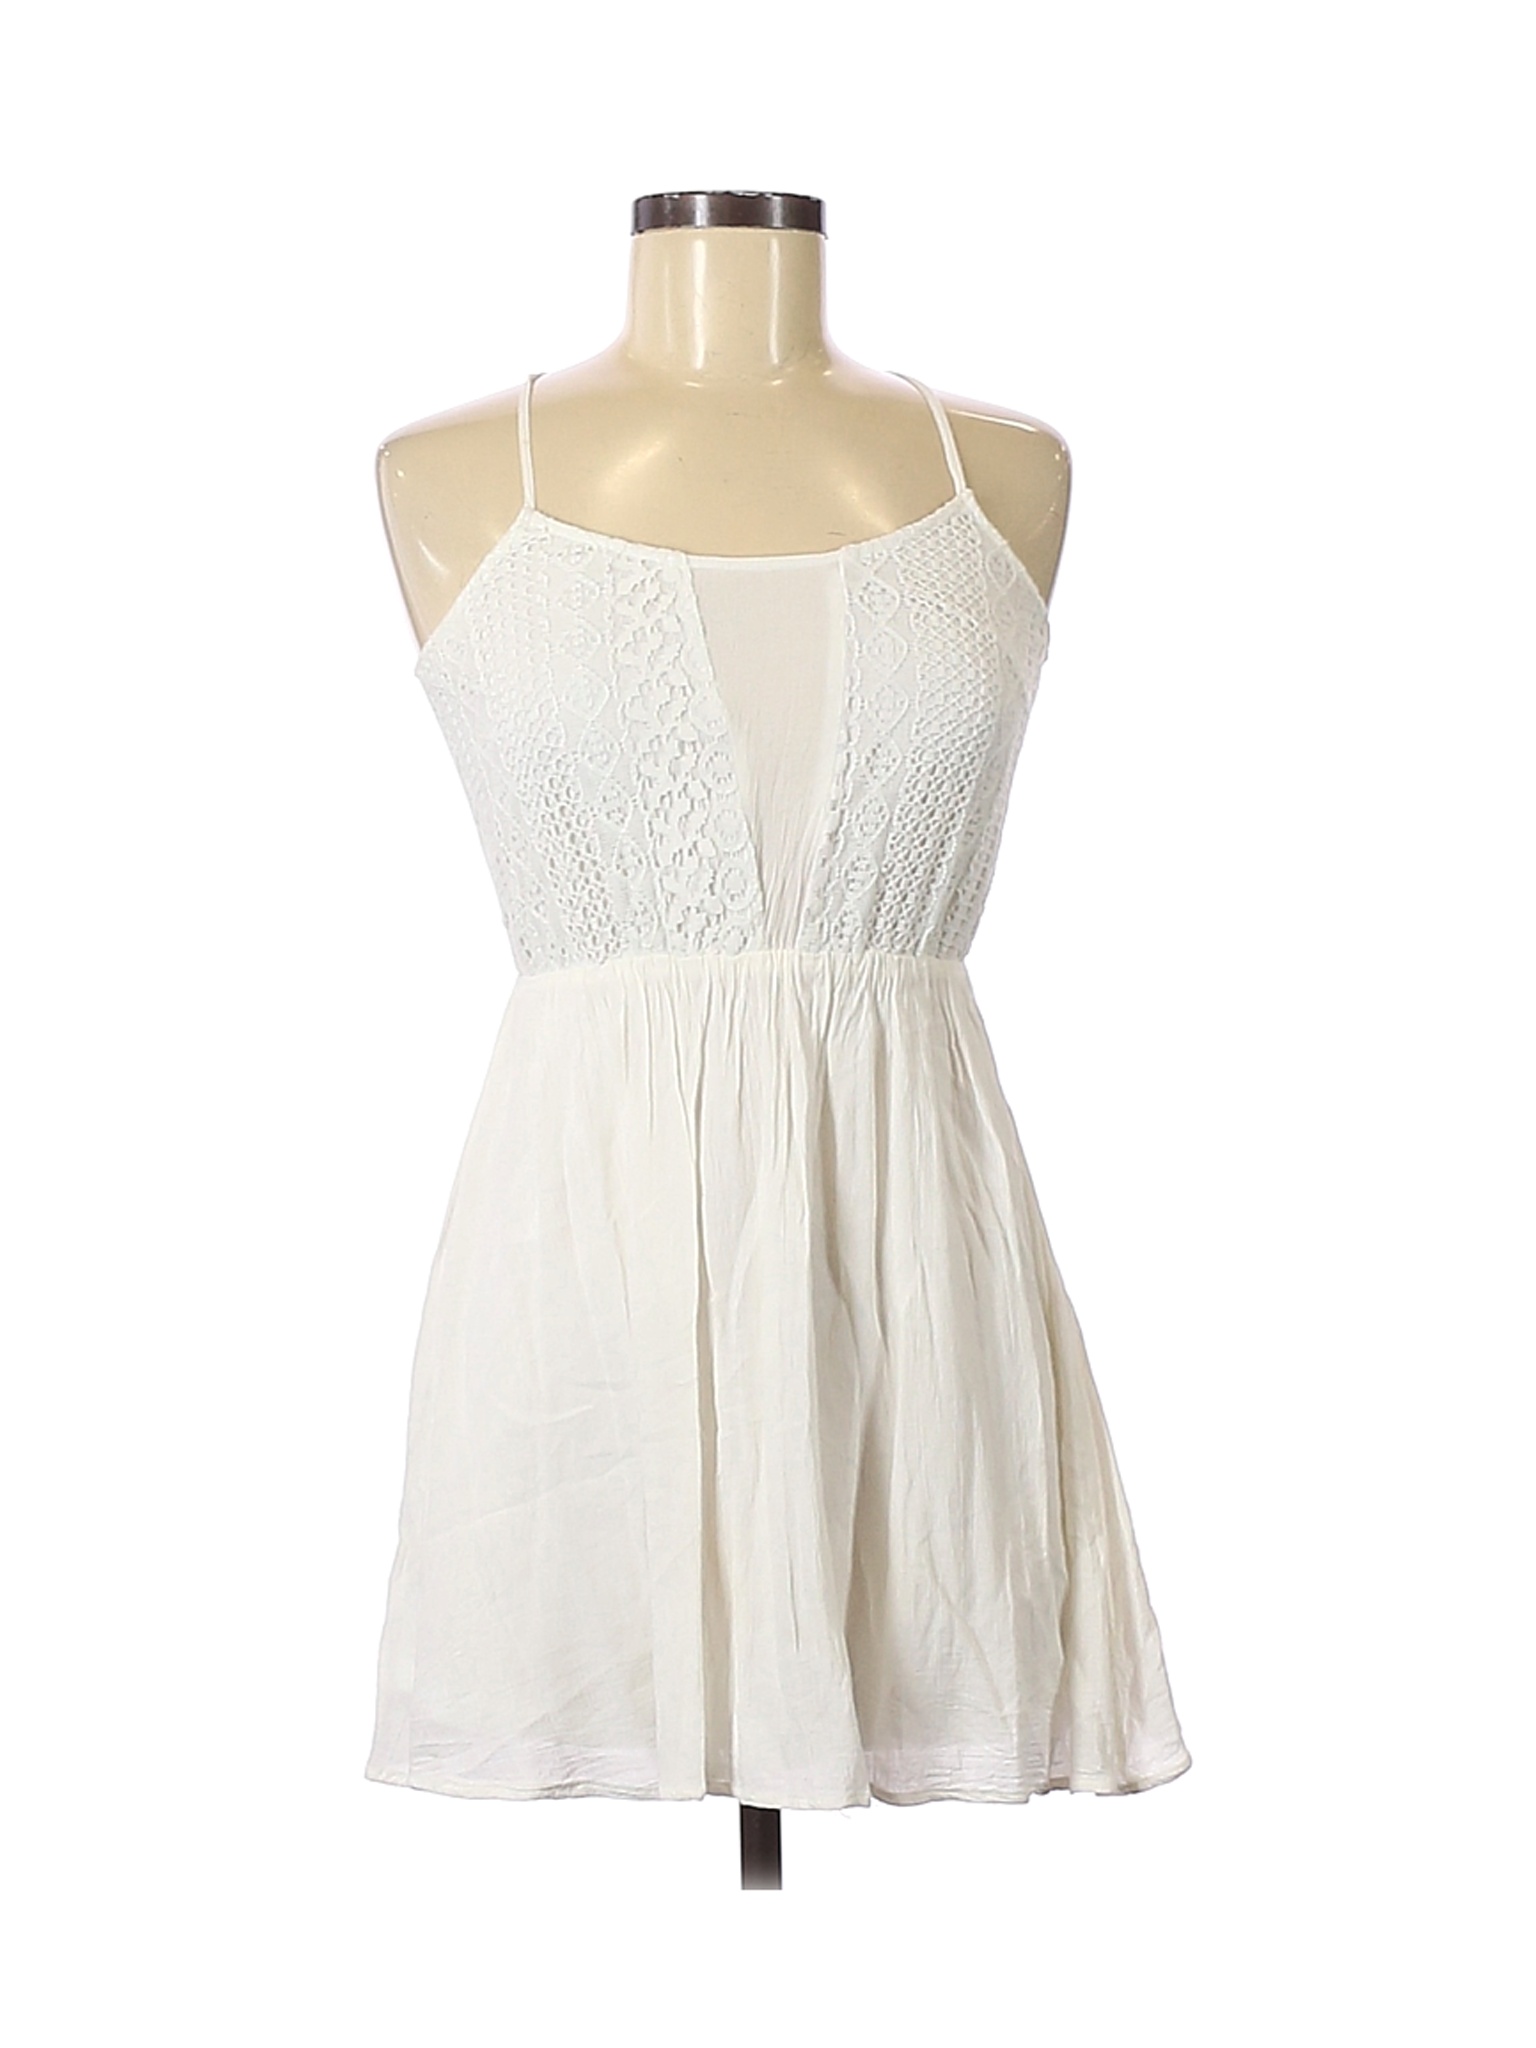 Forever 21 Women White Casual Dress XS | eBay